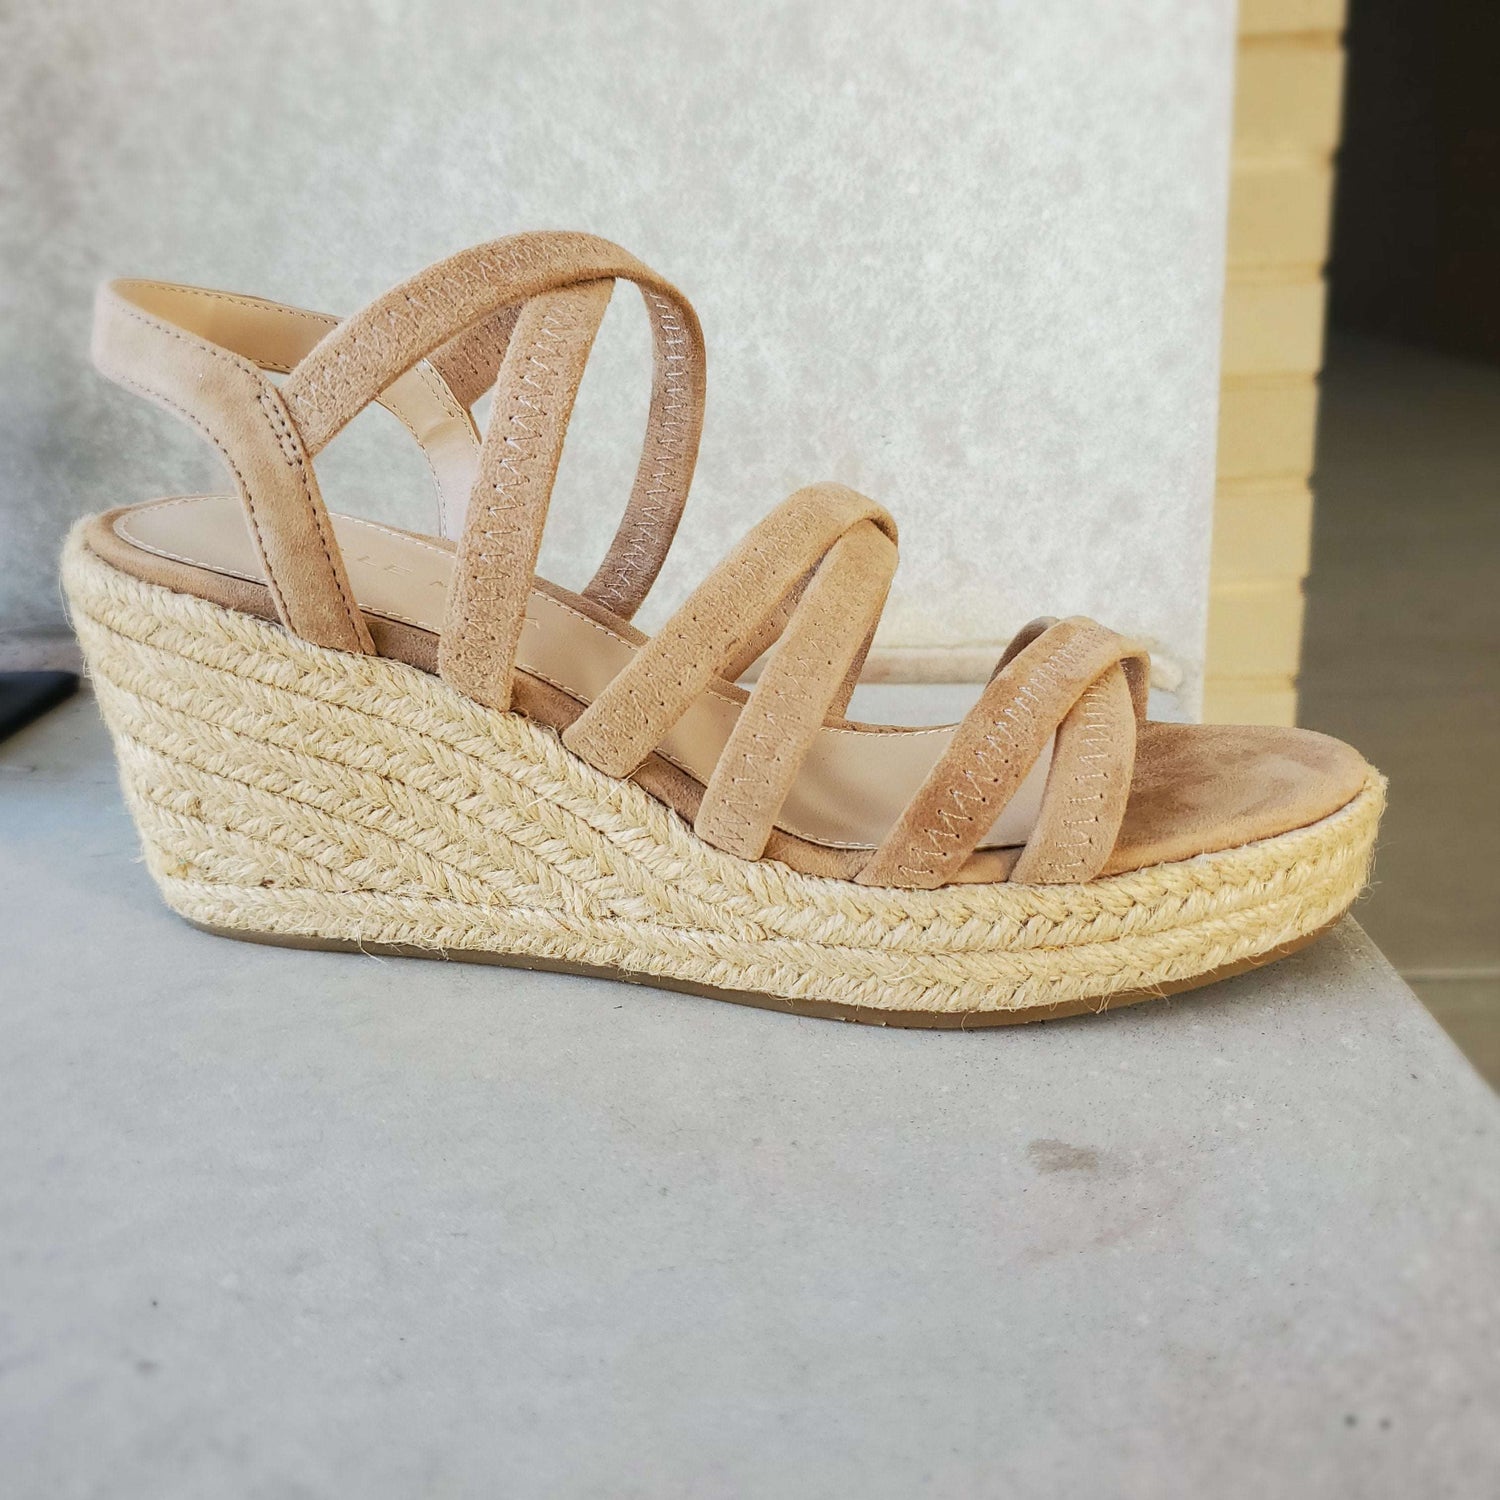 PELLE MODA - KORTEZ, Sandals, Pelle Moda, Plum Bottom